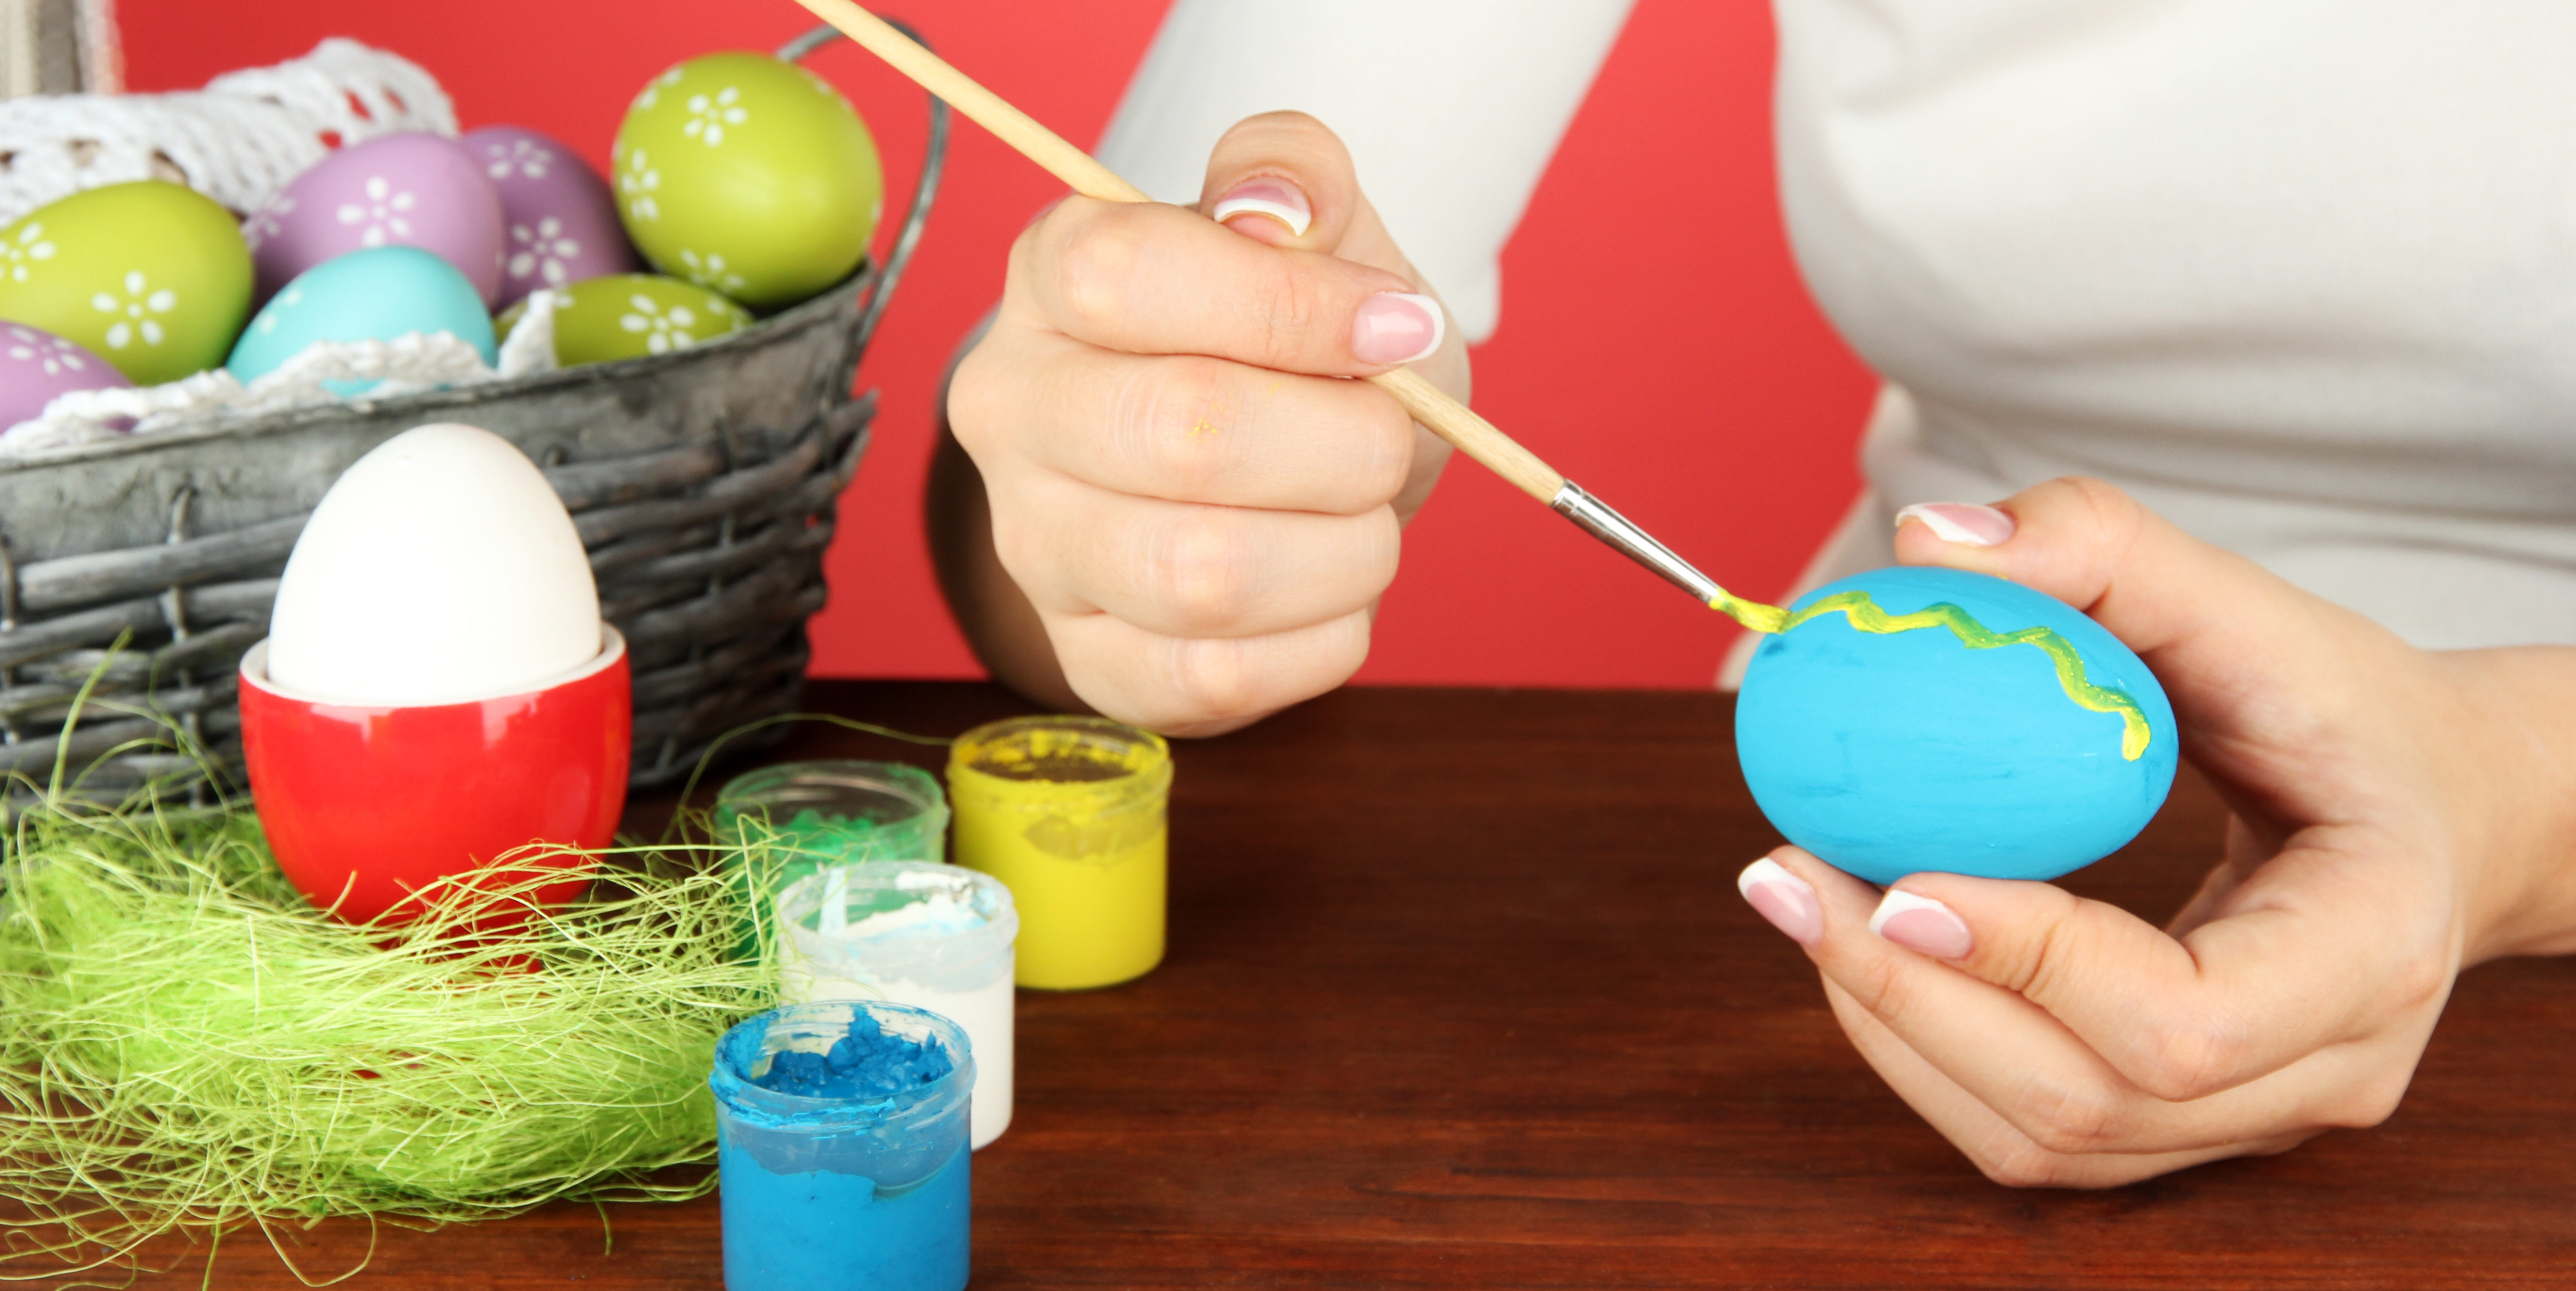 Frau bemalt mit Pinsel ein Ei blau, das sie gerade in der Hand hält. Im Hintergrund ist ein Osternest mit weiteren bunt bemalten Eiern zu sehen.